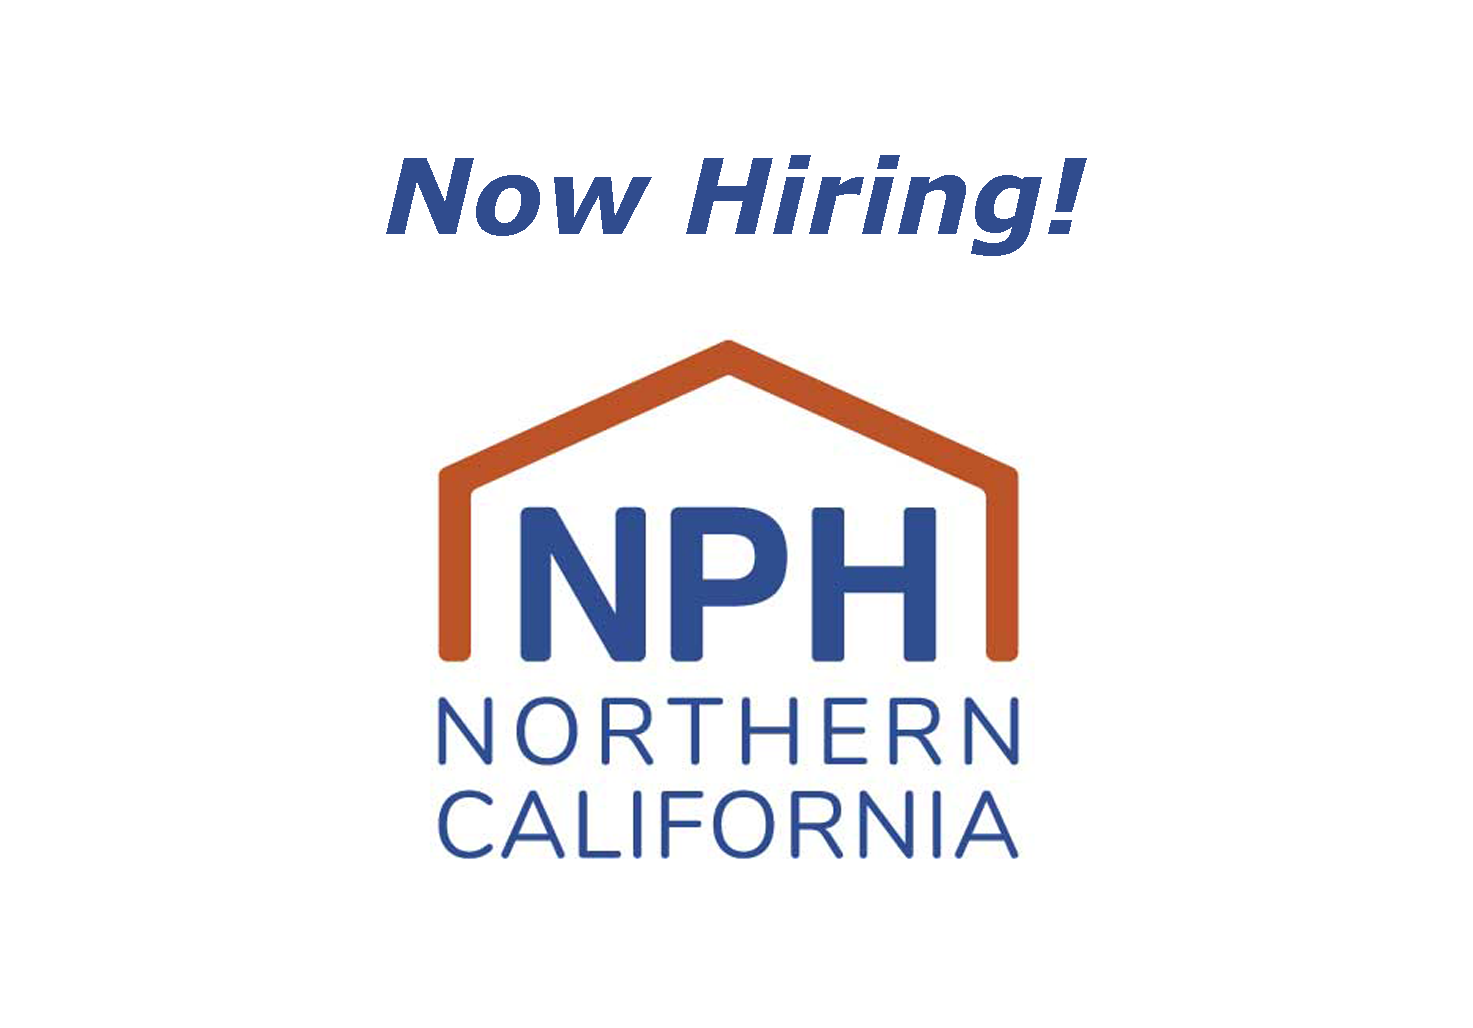 Now hiring written above NPH logo